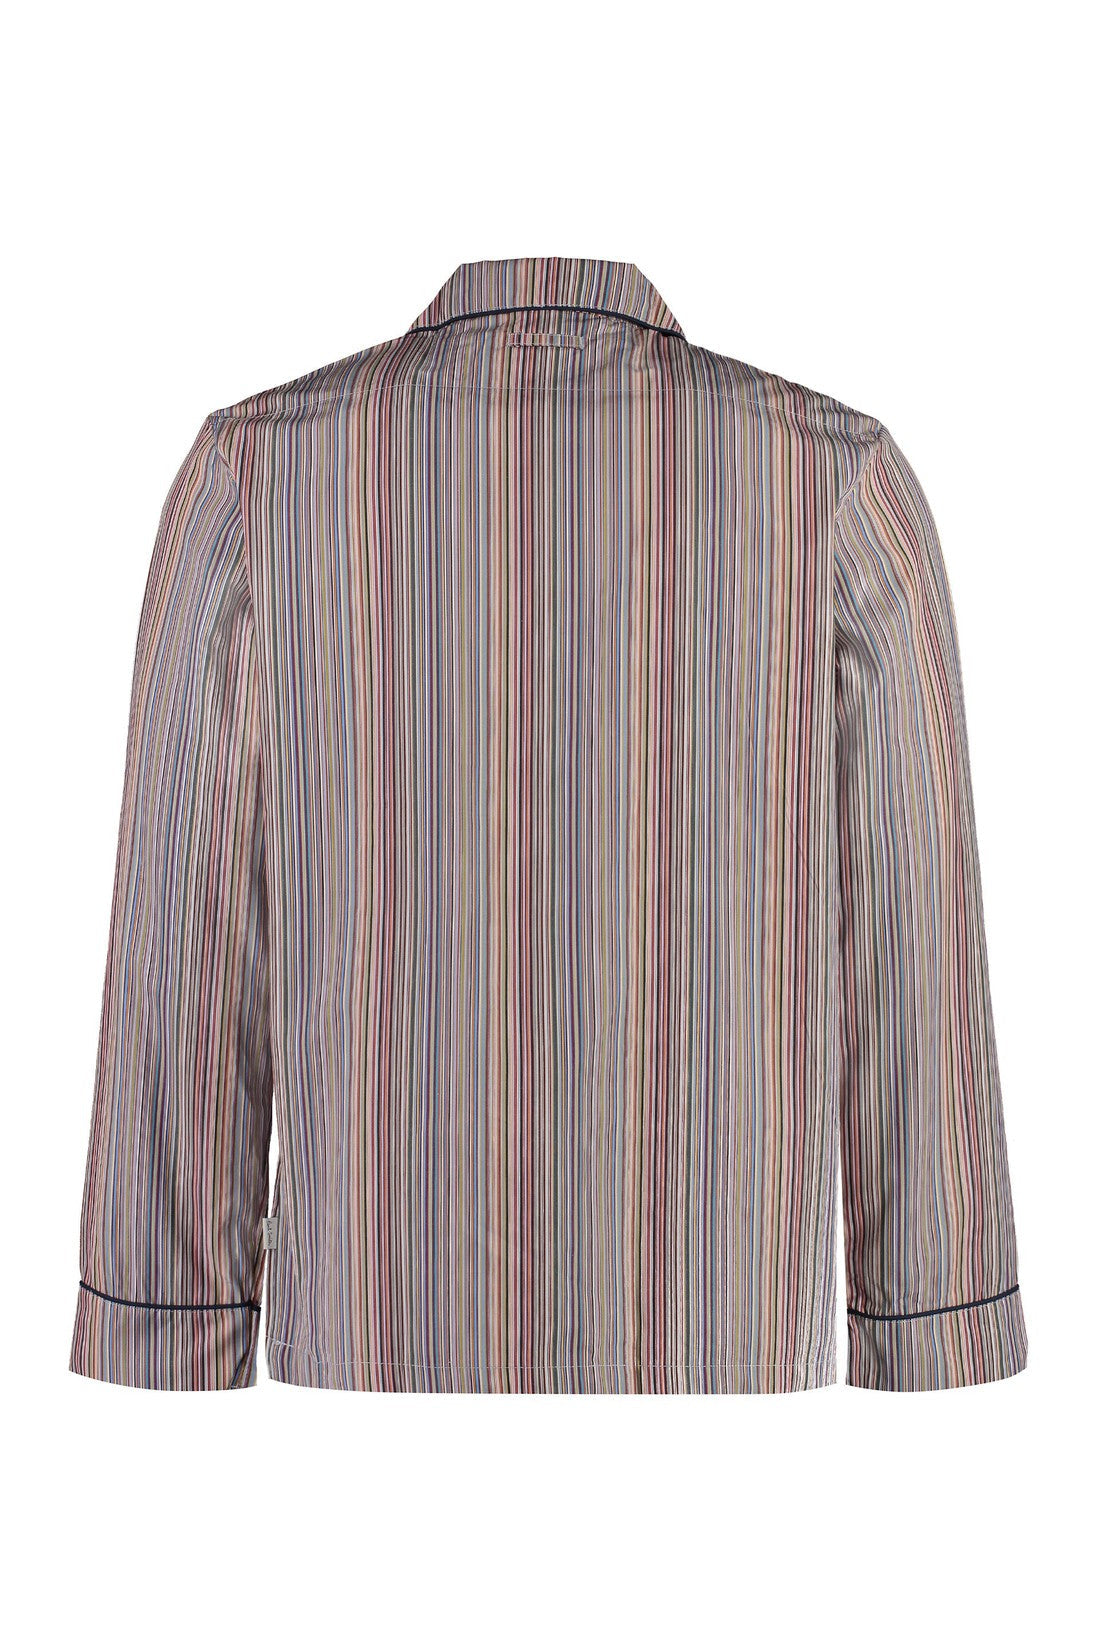 Paul Smith-OUTLET-SALE-Striped cotton pyjamas-ARCHIVIST